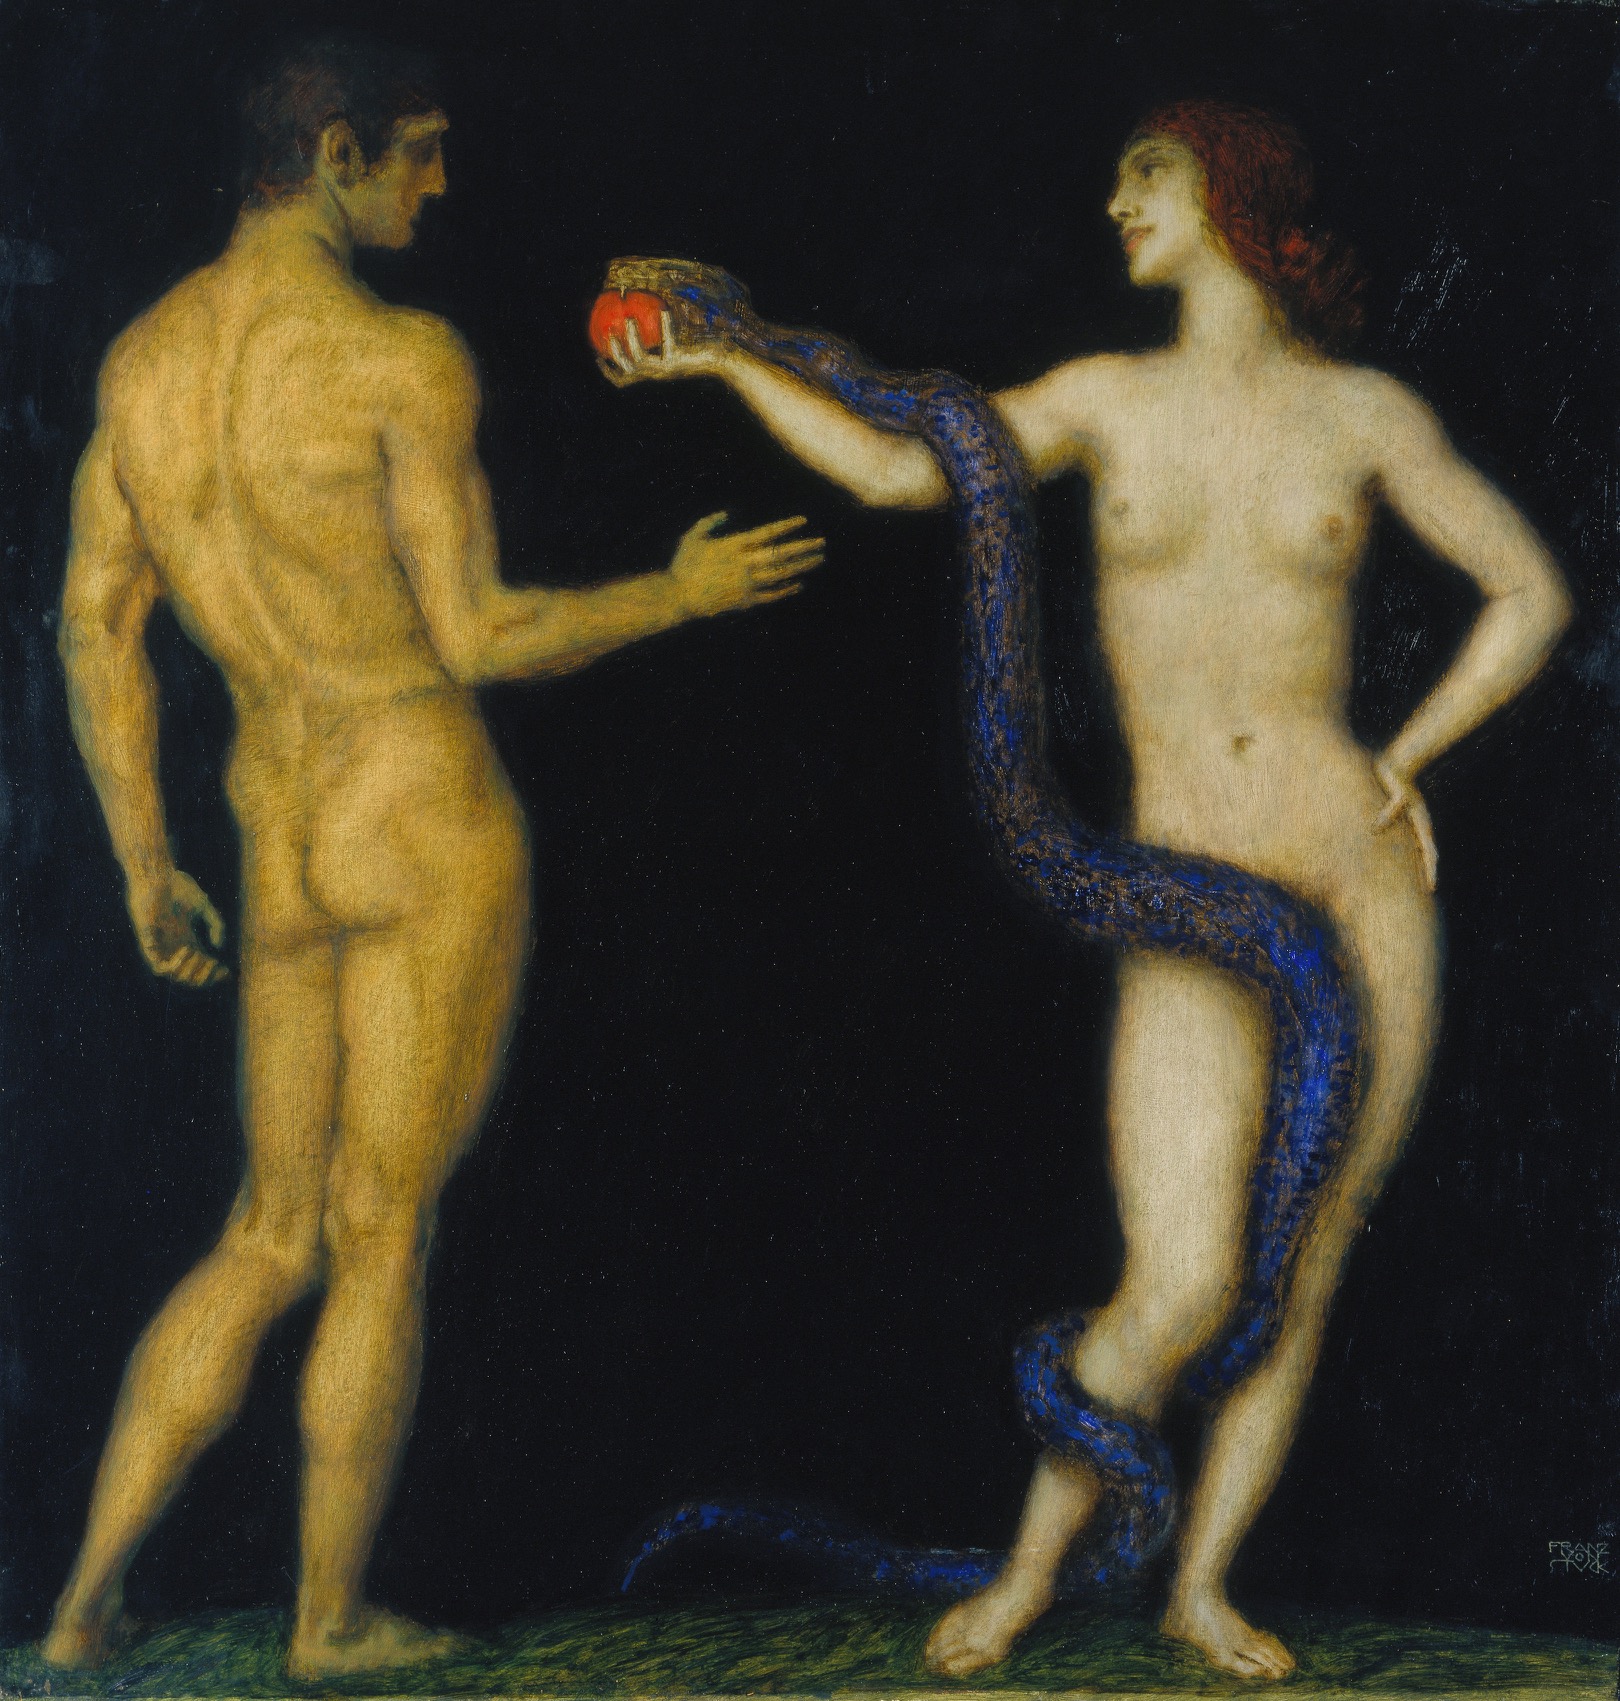 Franz von Stuck, (1863–1928), Adam and Eve, 1920–1926. Oil on canvas, 98 x 93.5 cm. Städel Museum, Frankfurt am Main Photo: Städel Museum – ARTOTHEK